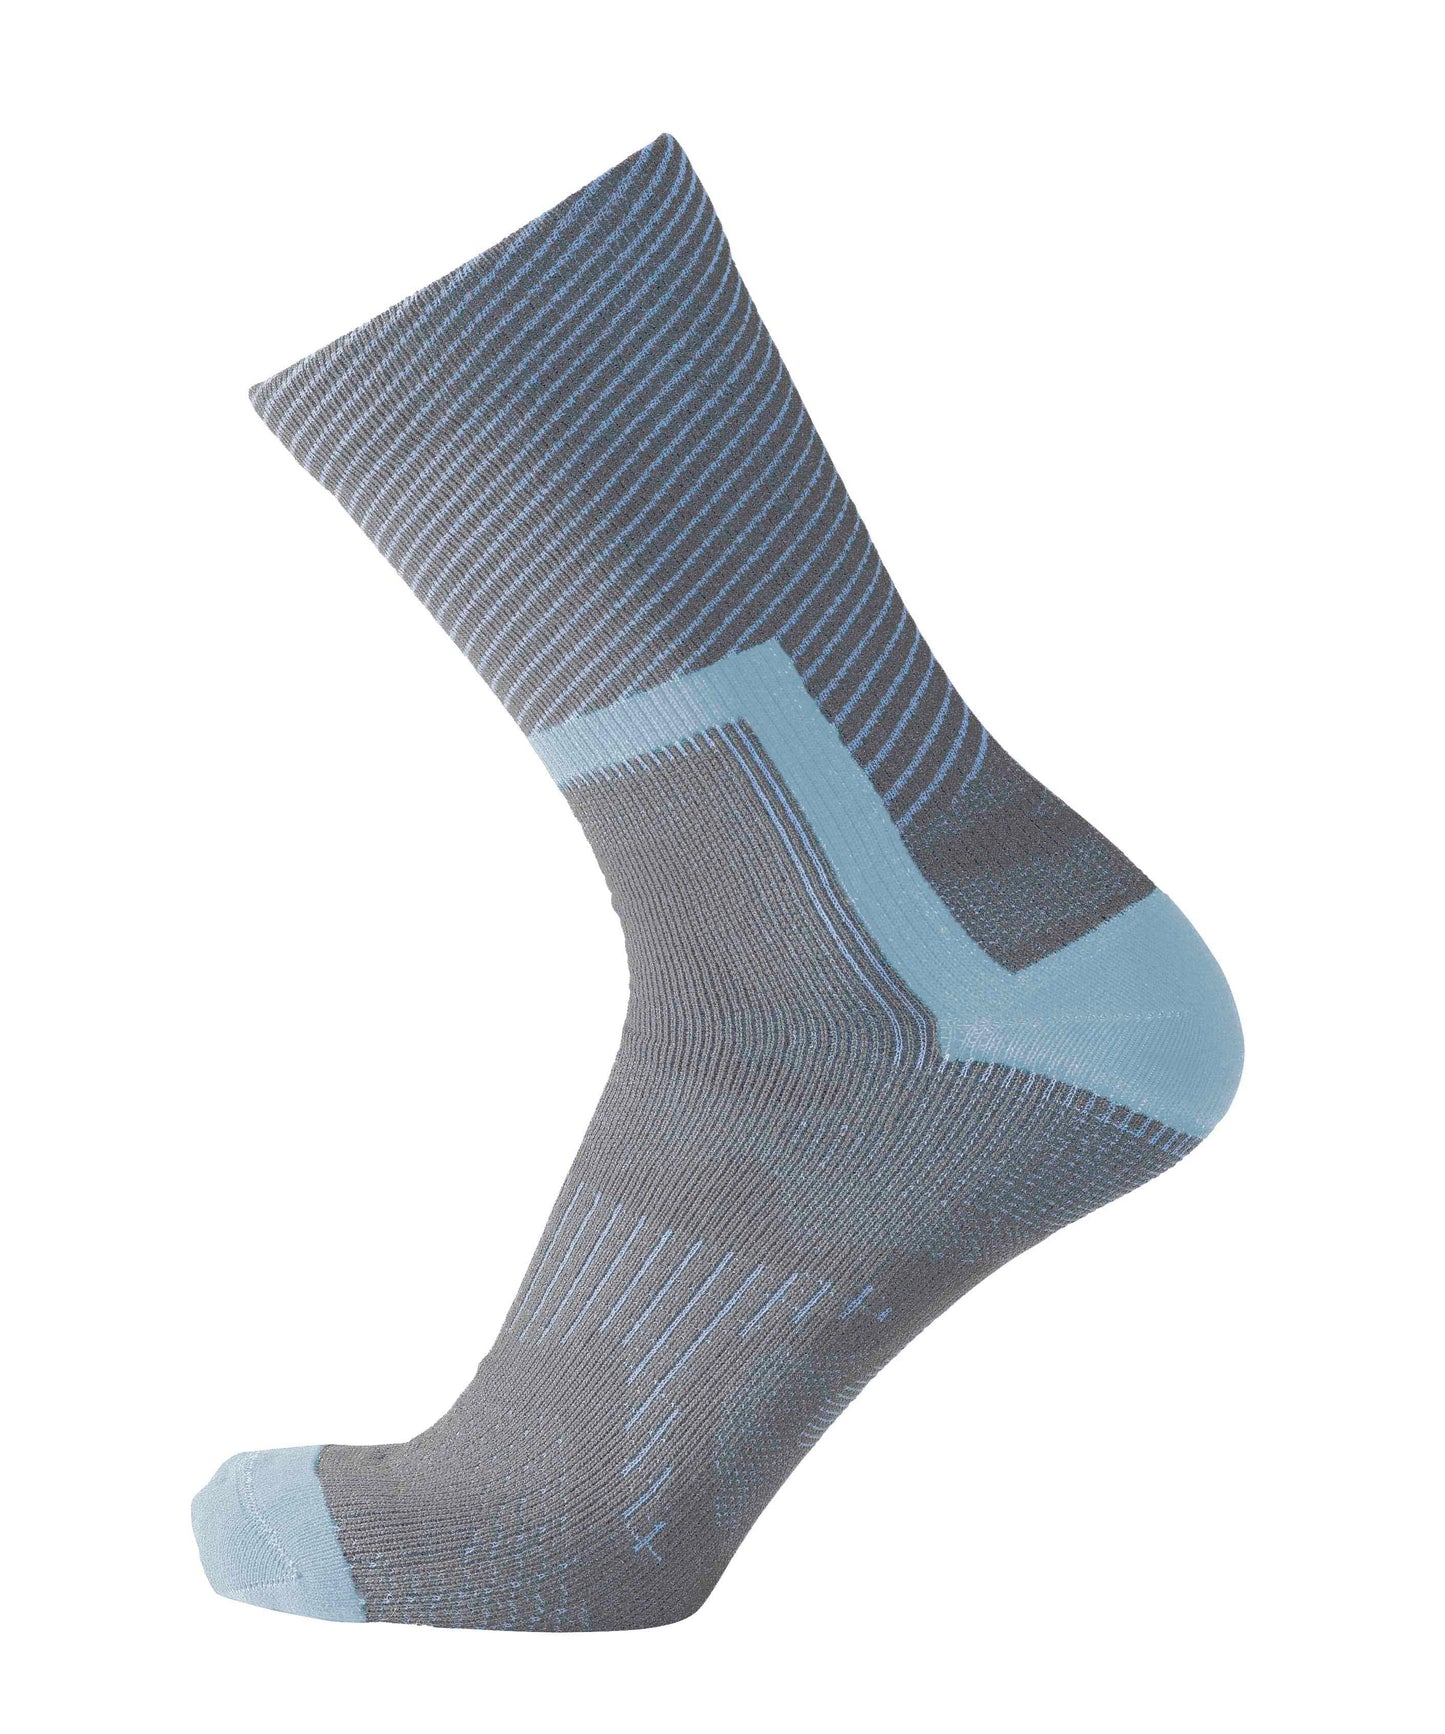 Crosspoint Ultralight Waterproof Socks